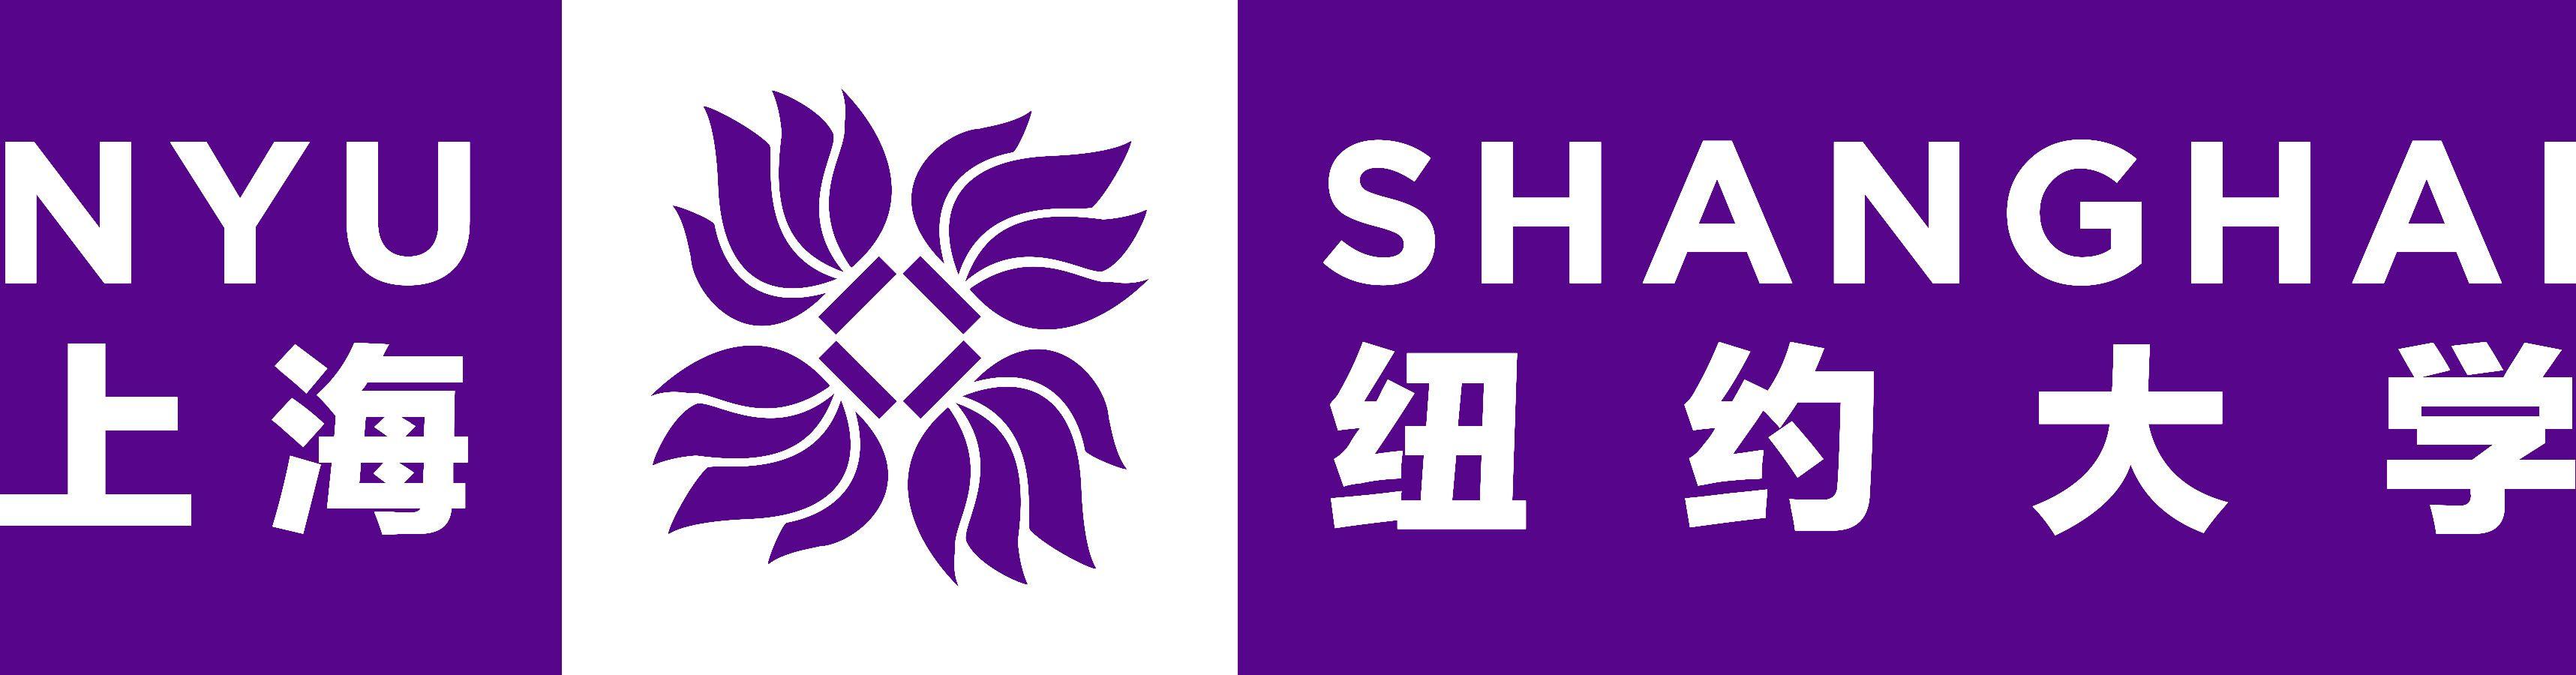 NYU Logo - NYU Shanghai